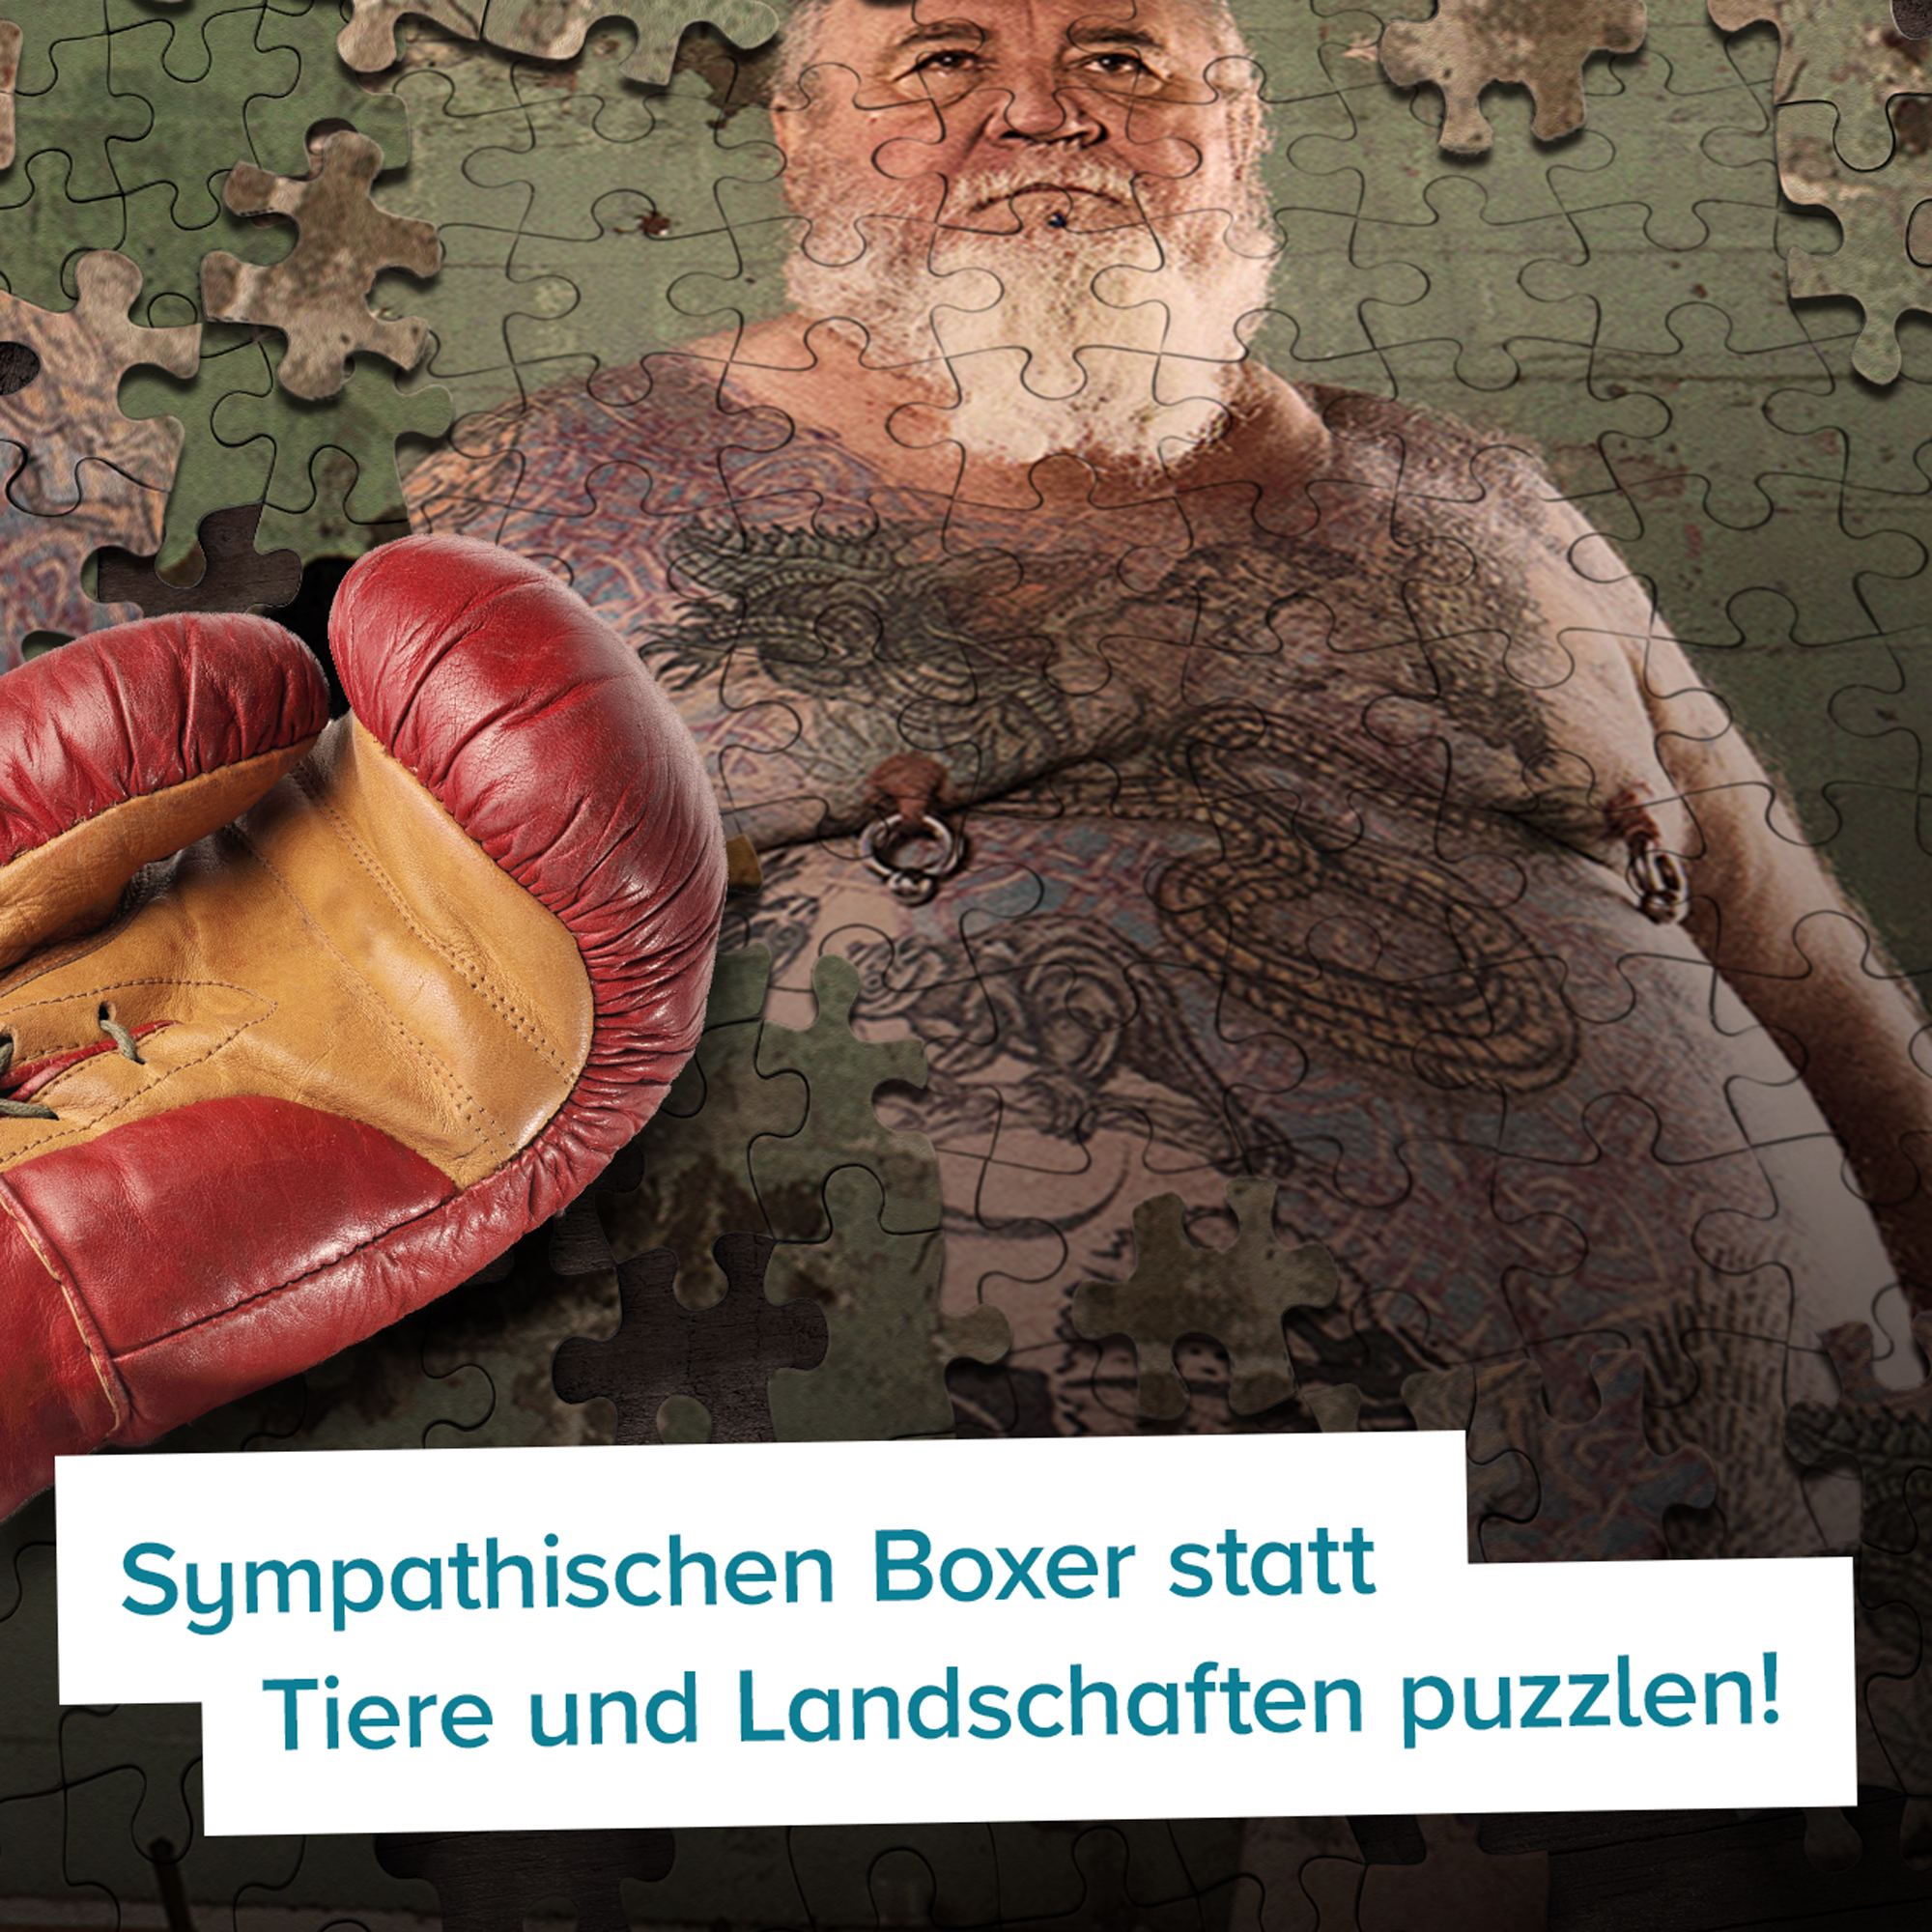 Boxer Puzzle - 1000 Teile 4130 - 4